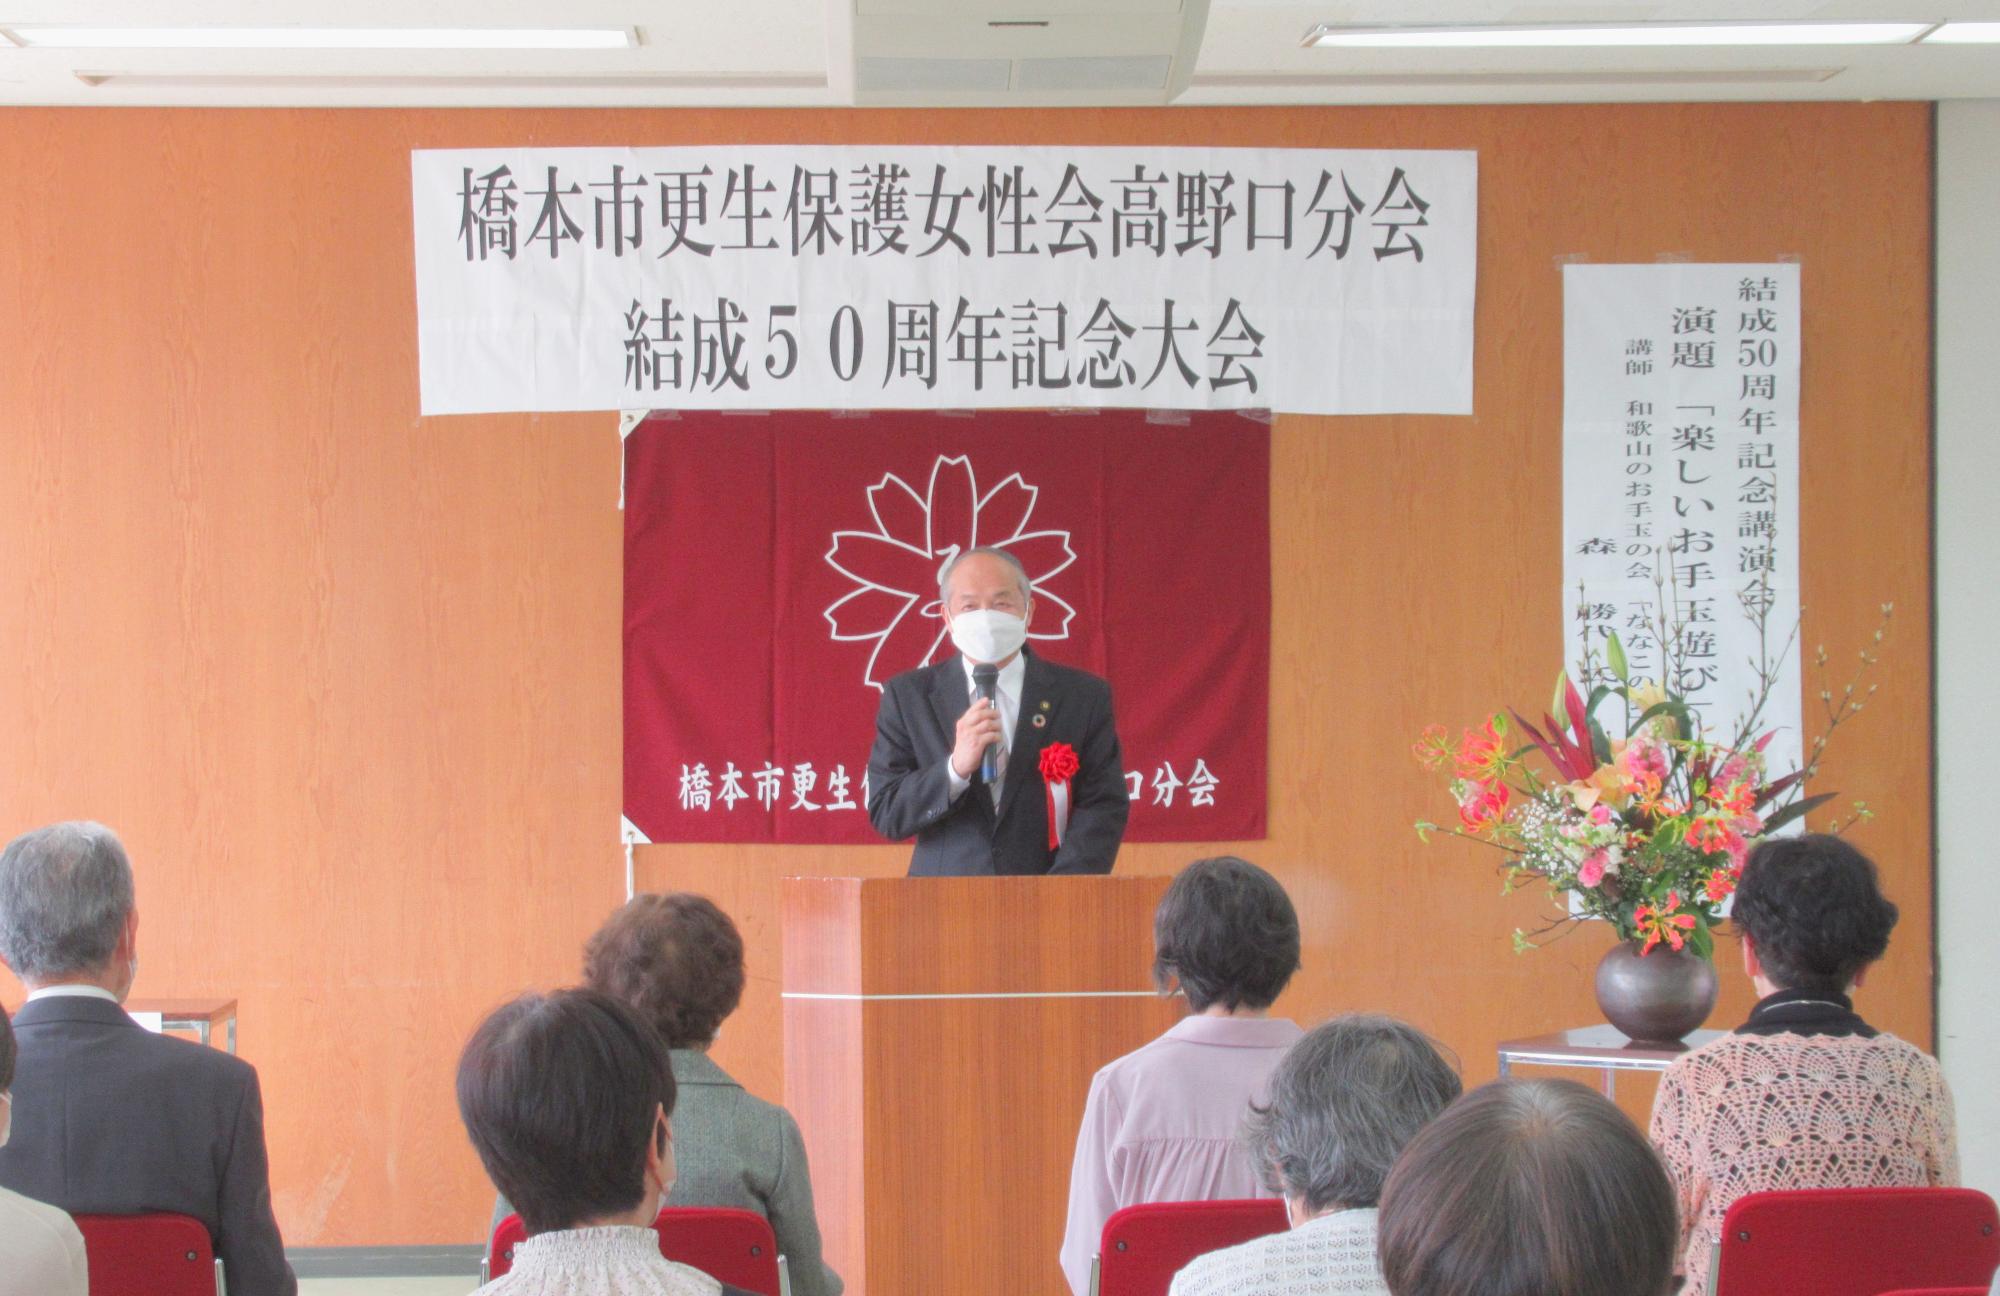 橋本市更生保護女性会50周年記念式典市長挨拶